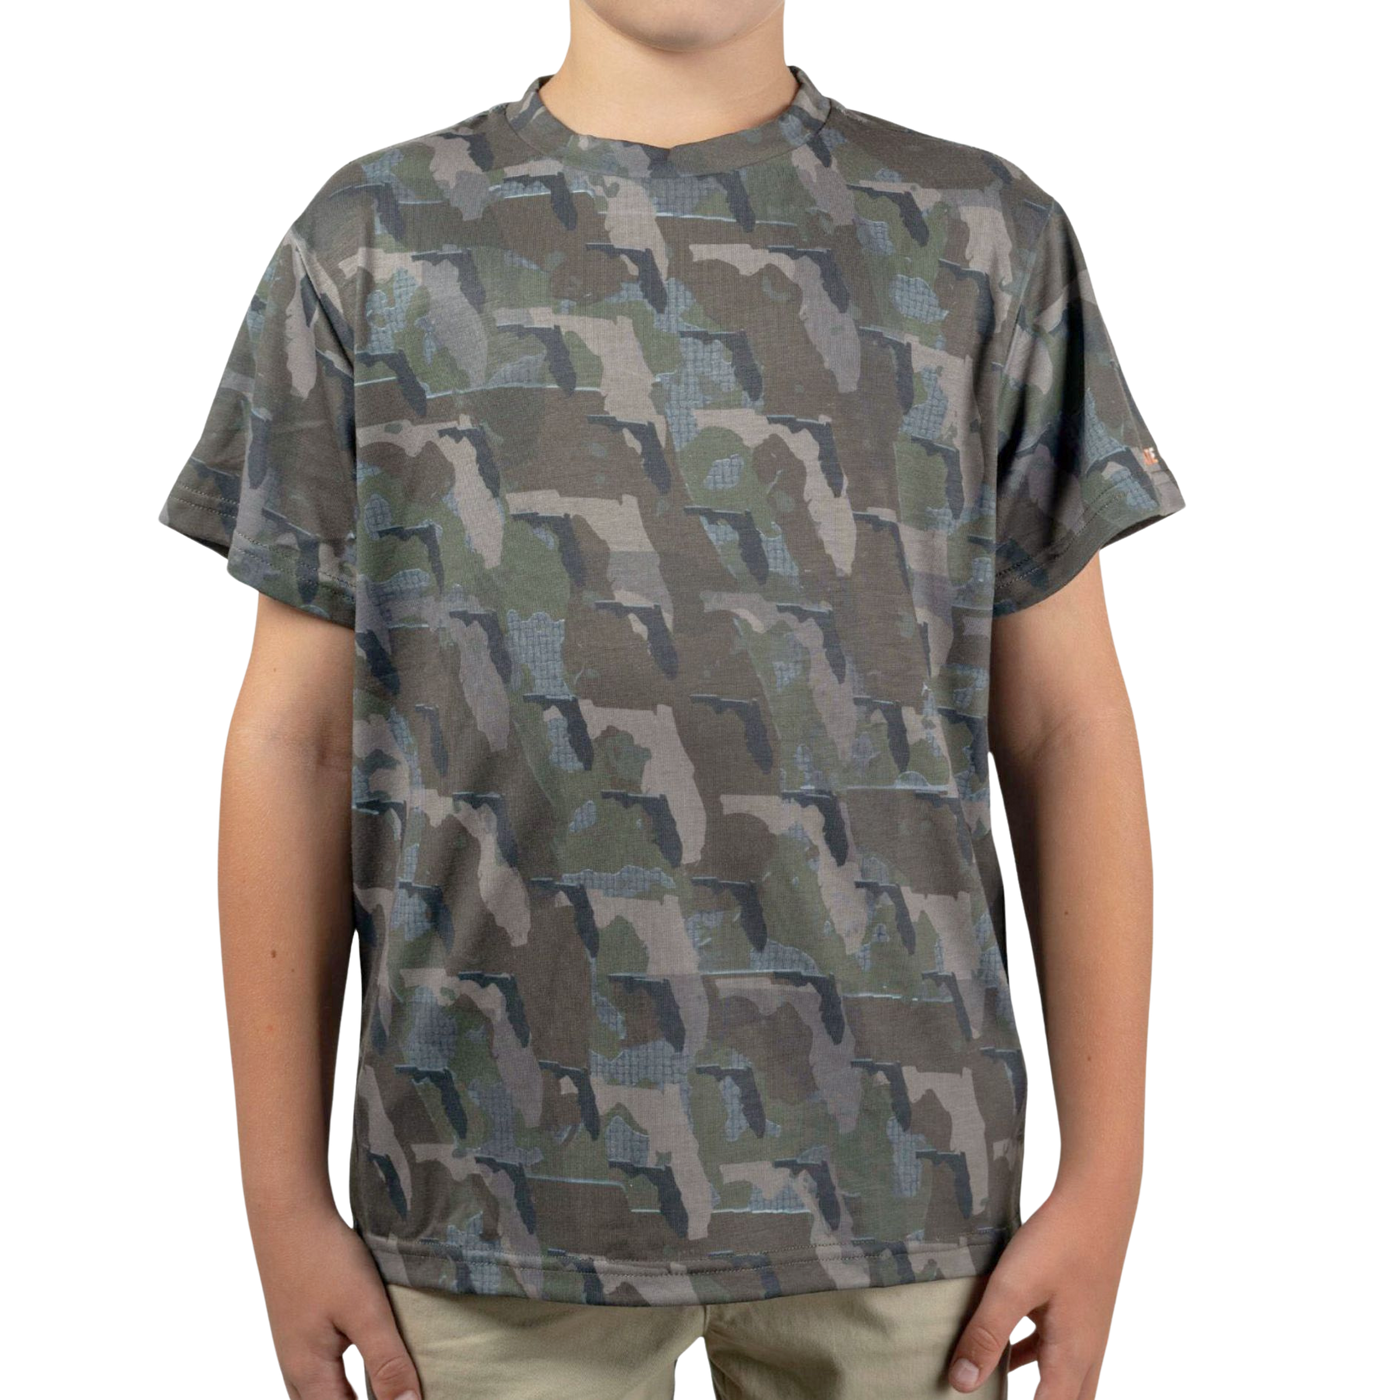 Florida Camo - Kids Short Sleeve Shirt